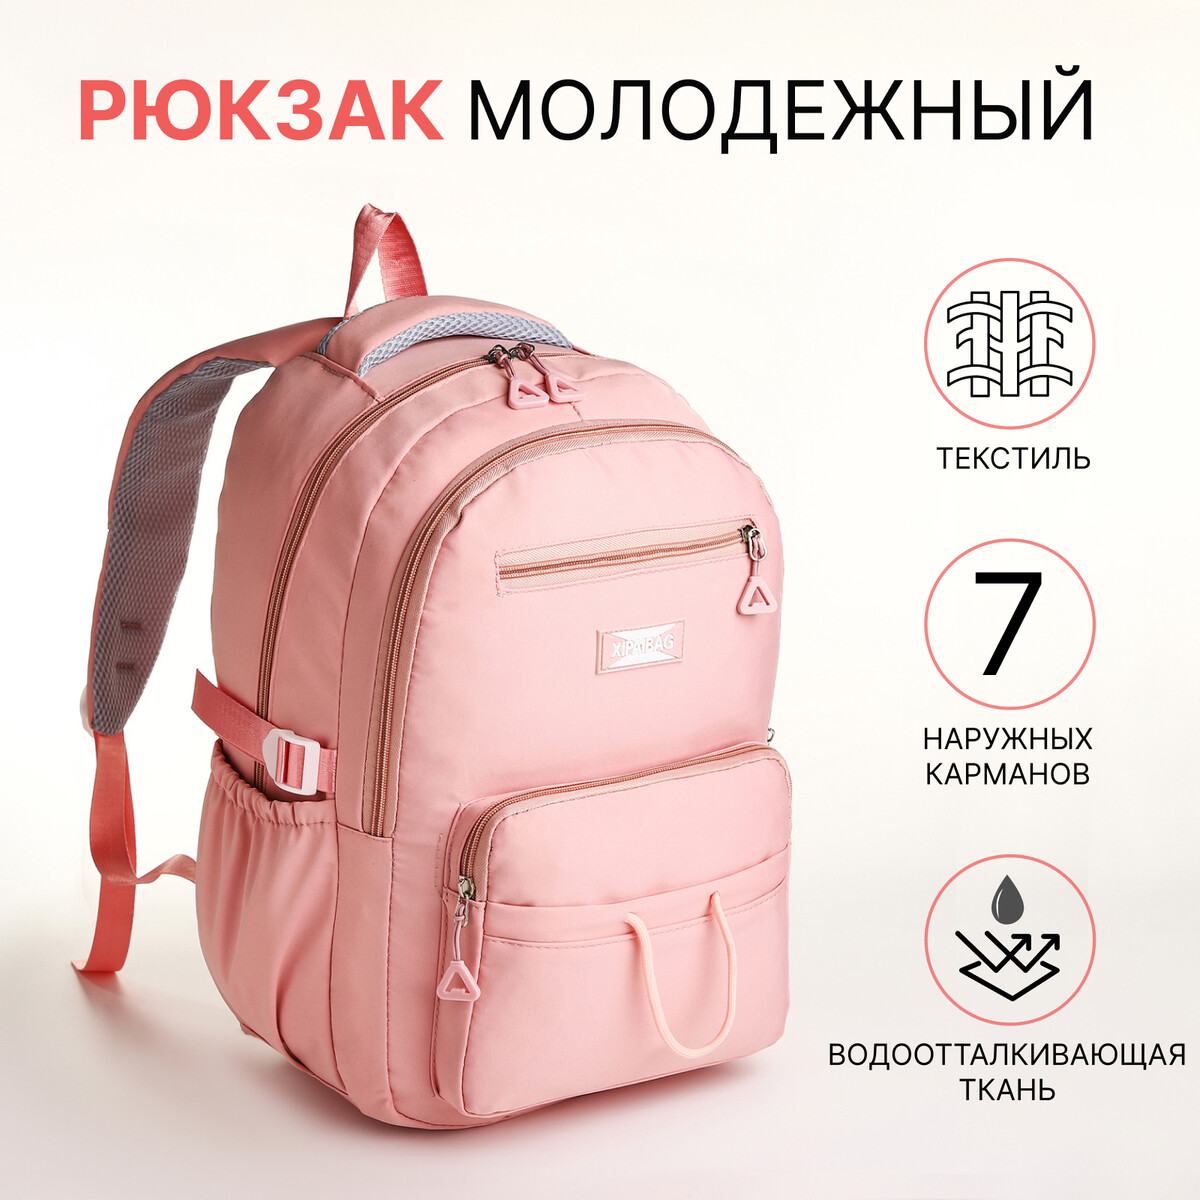 Рюкзак школьный из текстиля на молнии, 7 карманов, цвет розовый рюкзак на молнии 5 наружных карманов розовый